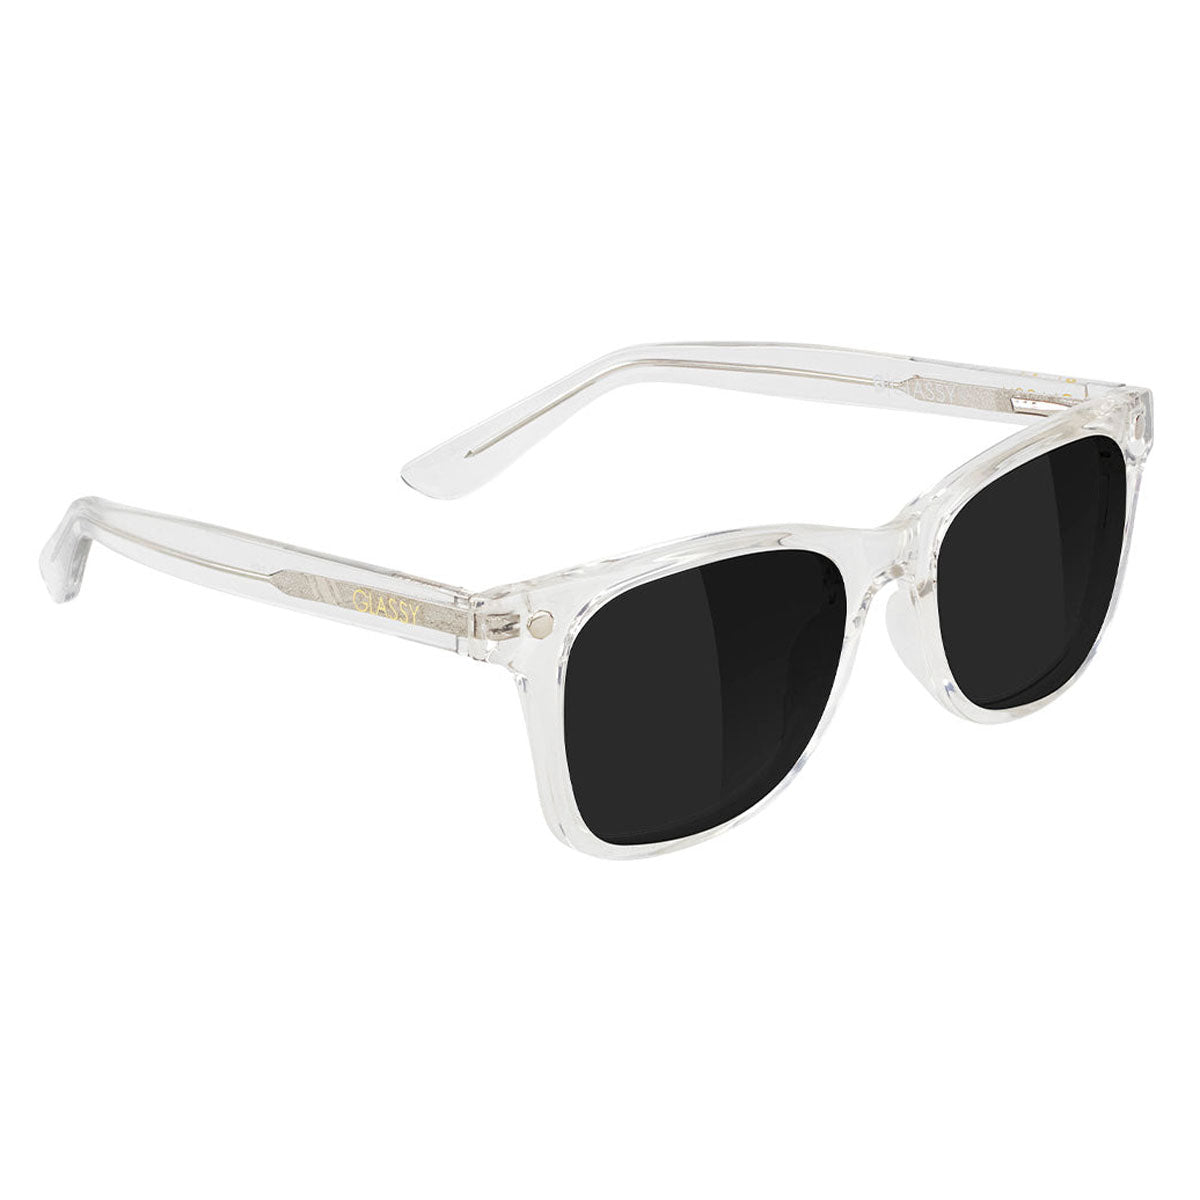 Glassy Harper Premium Polarized Sunglasses - Clear image 1